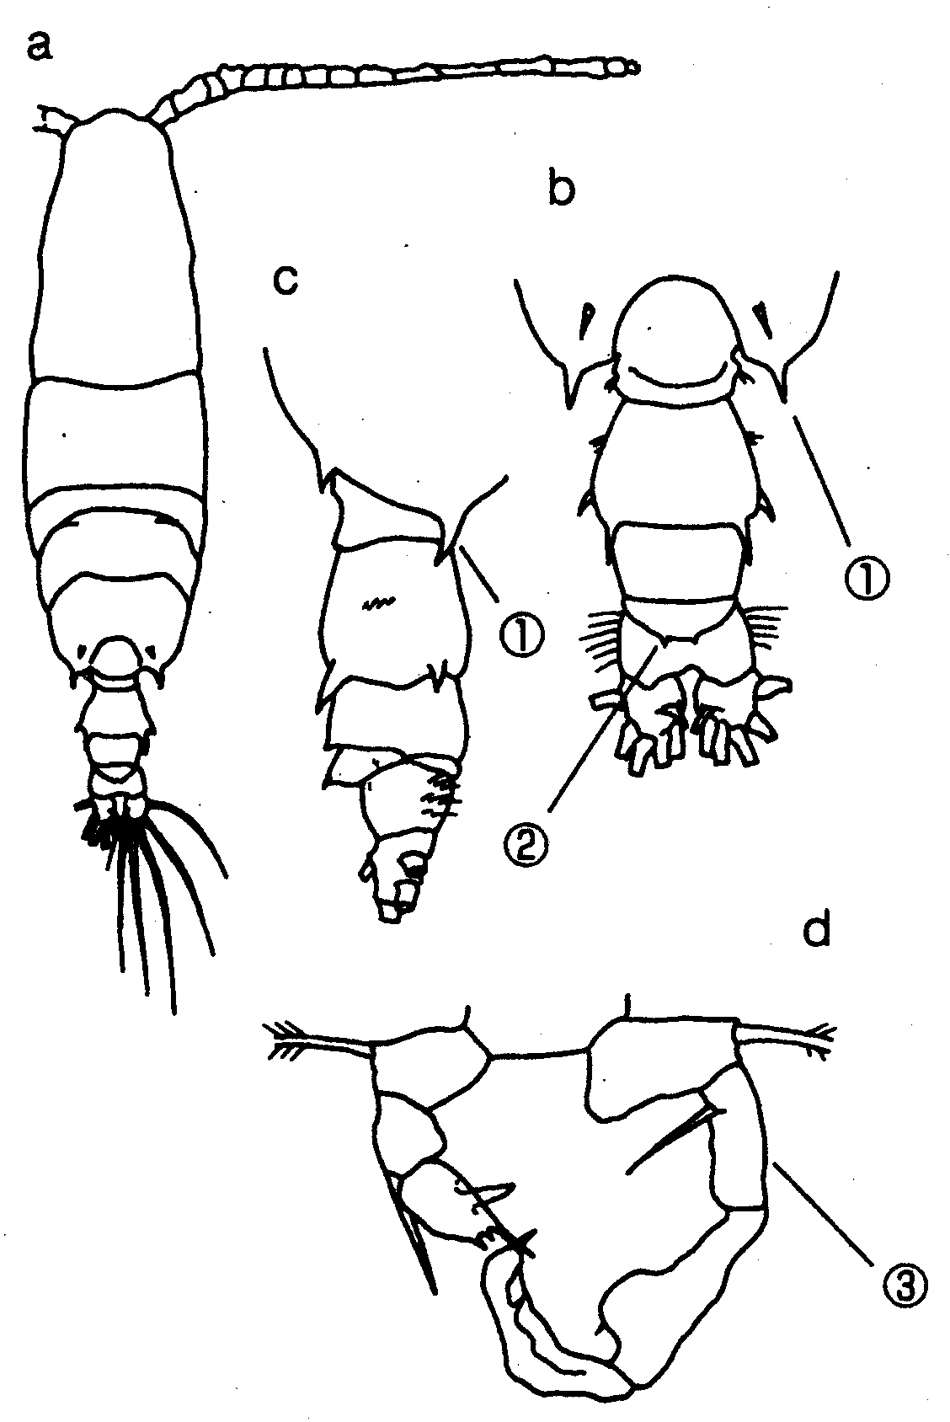 Species Acartia (Odontacartia) erythraea - Plate 14 of morphological figures